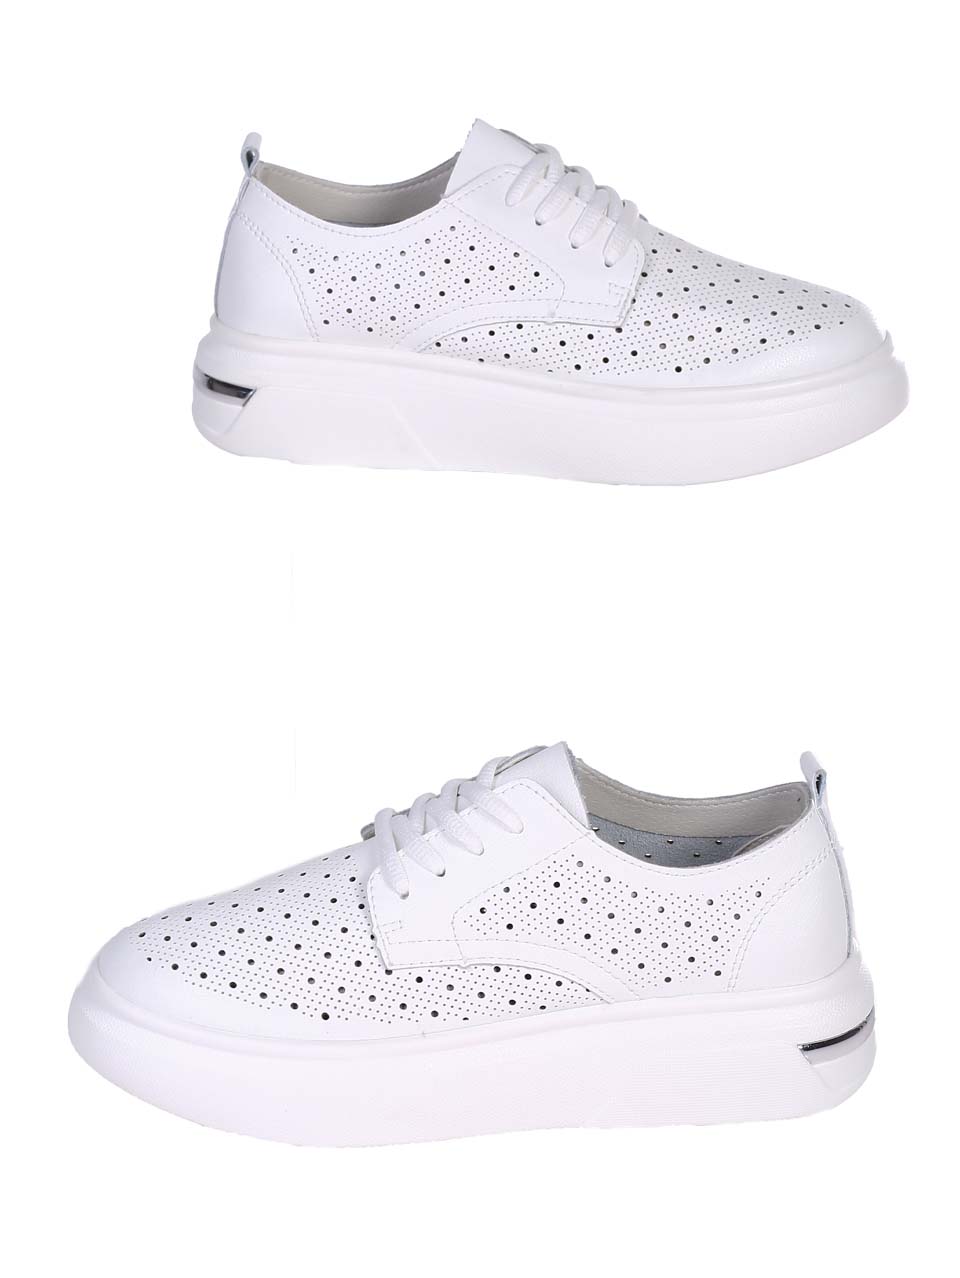 Ежедневни дамски обувки от естествена кожа в бяло 3AF-24051 white